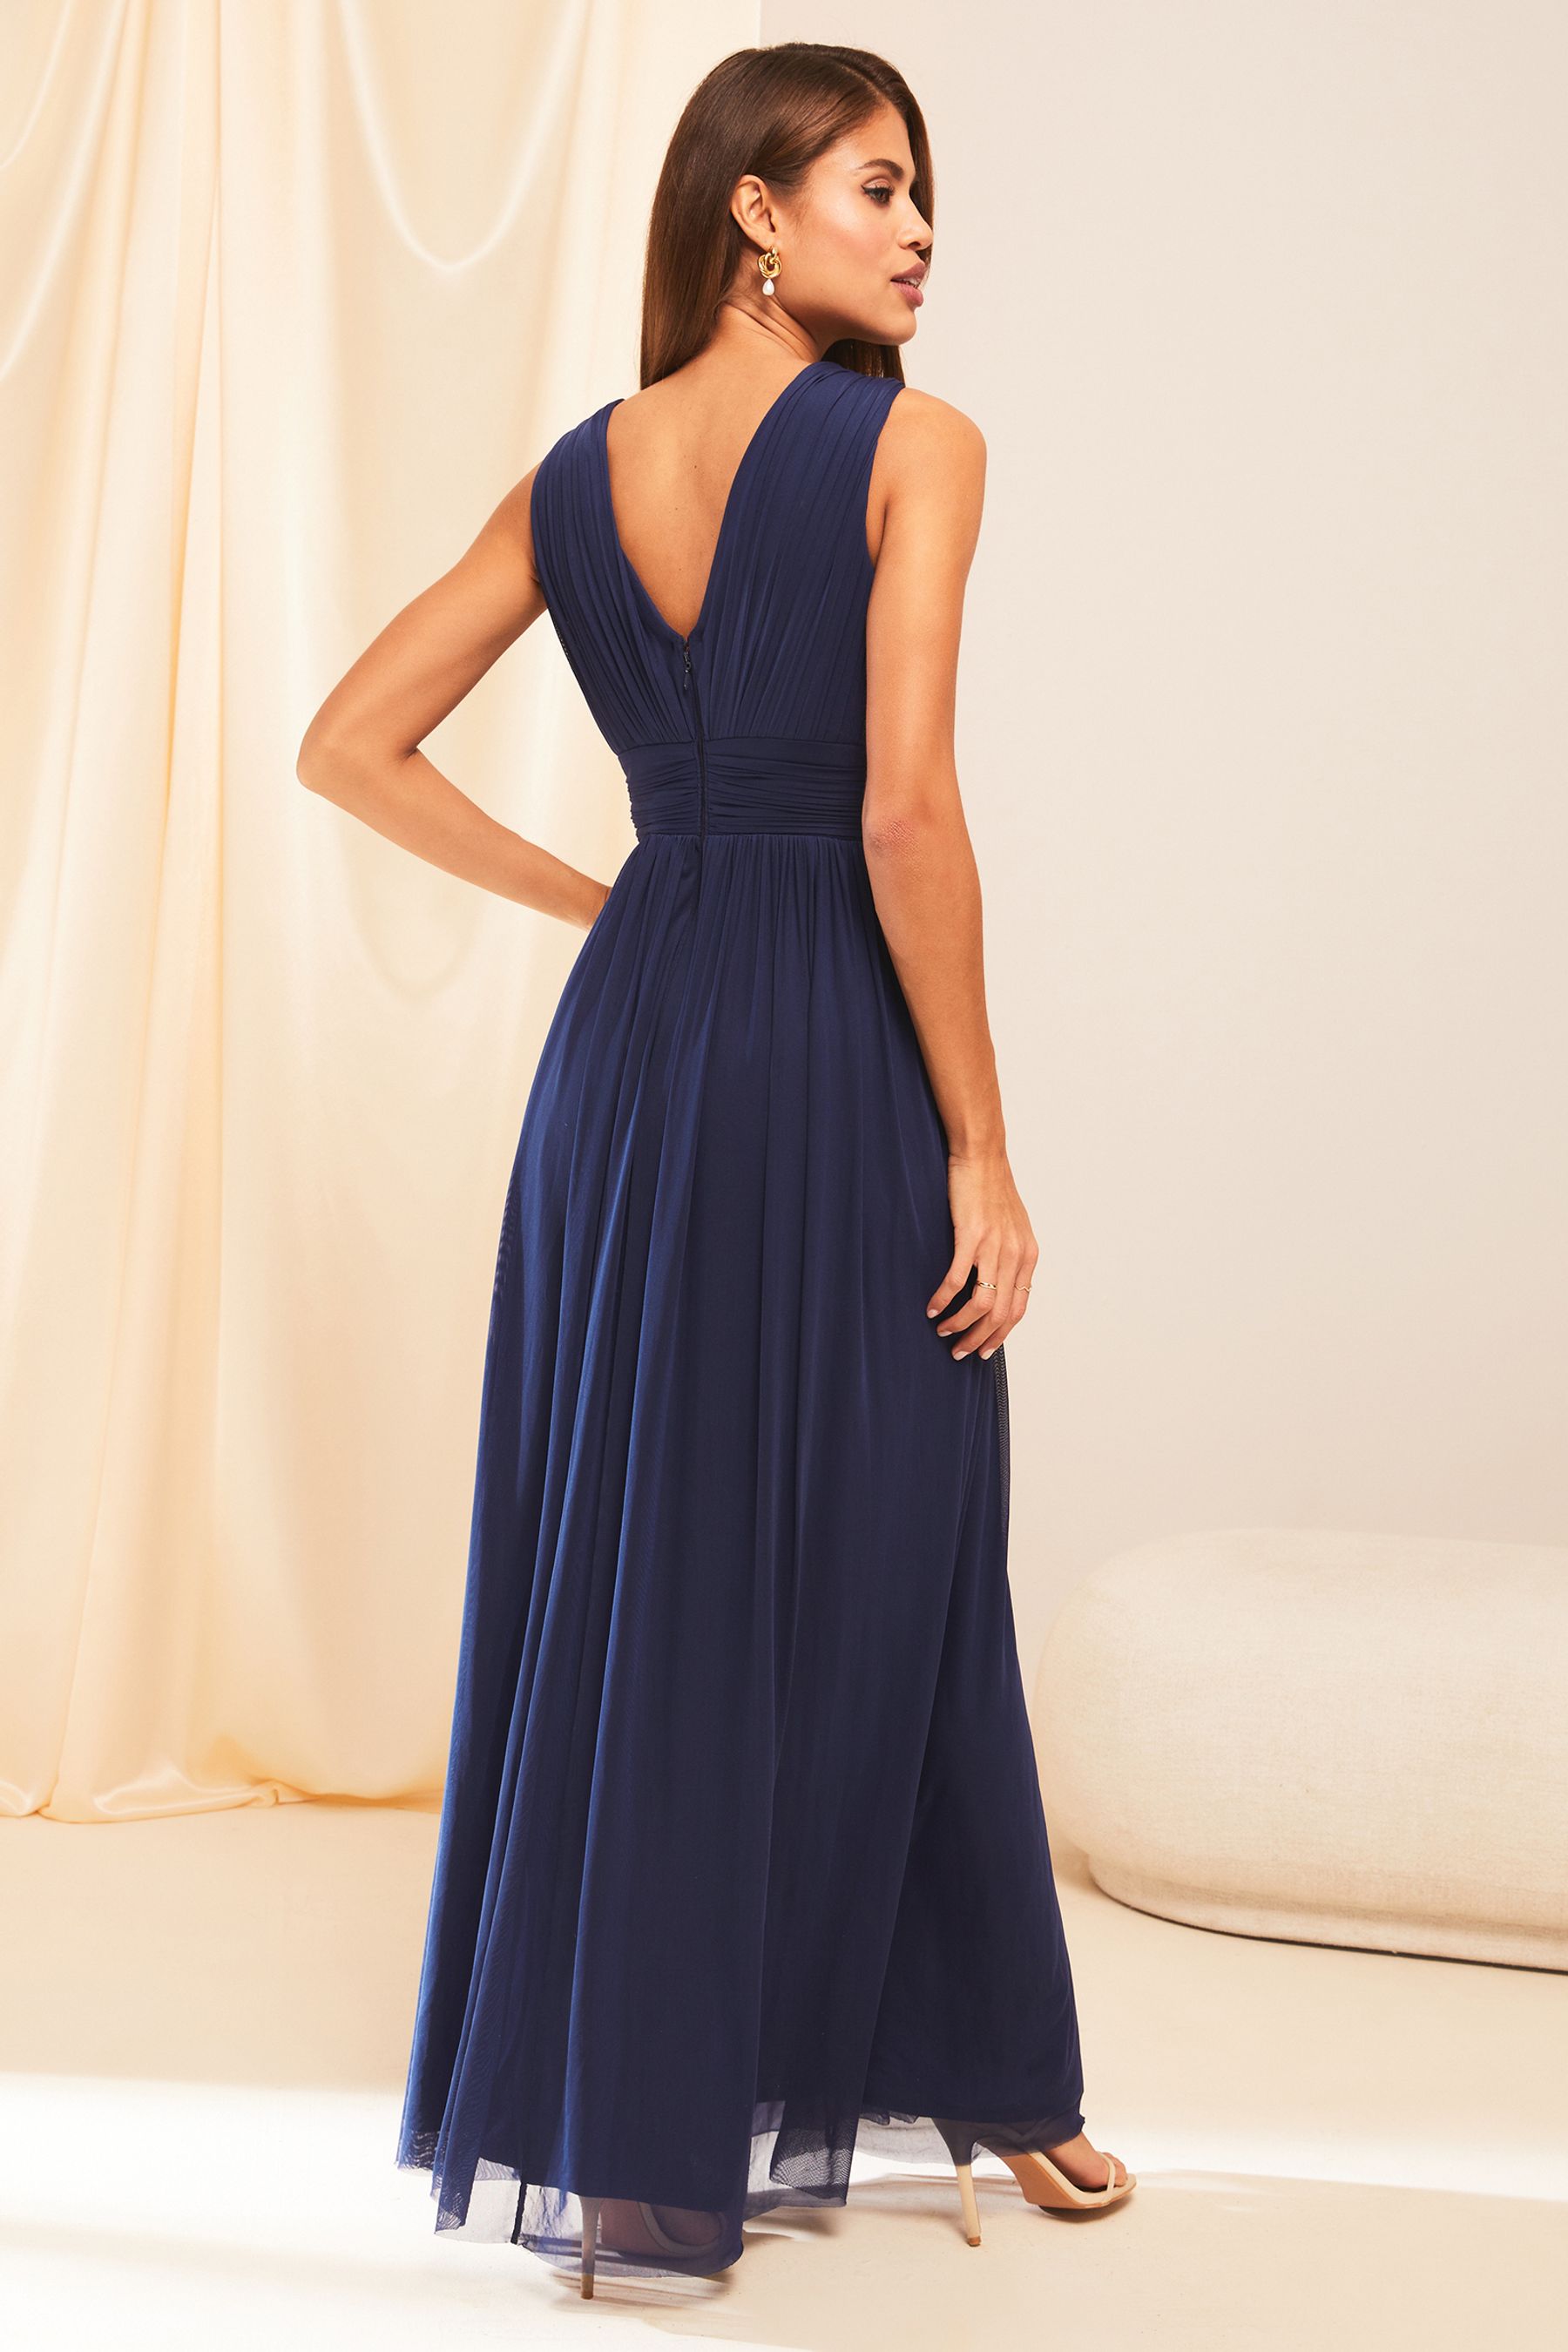 Buy Lipsy Empire Sleeveless Bridesmaid Maxi Dress from Next Ireland